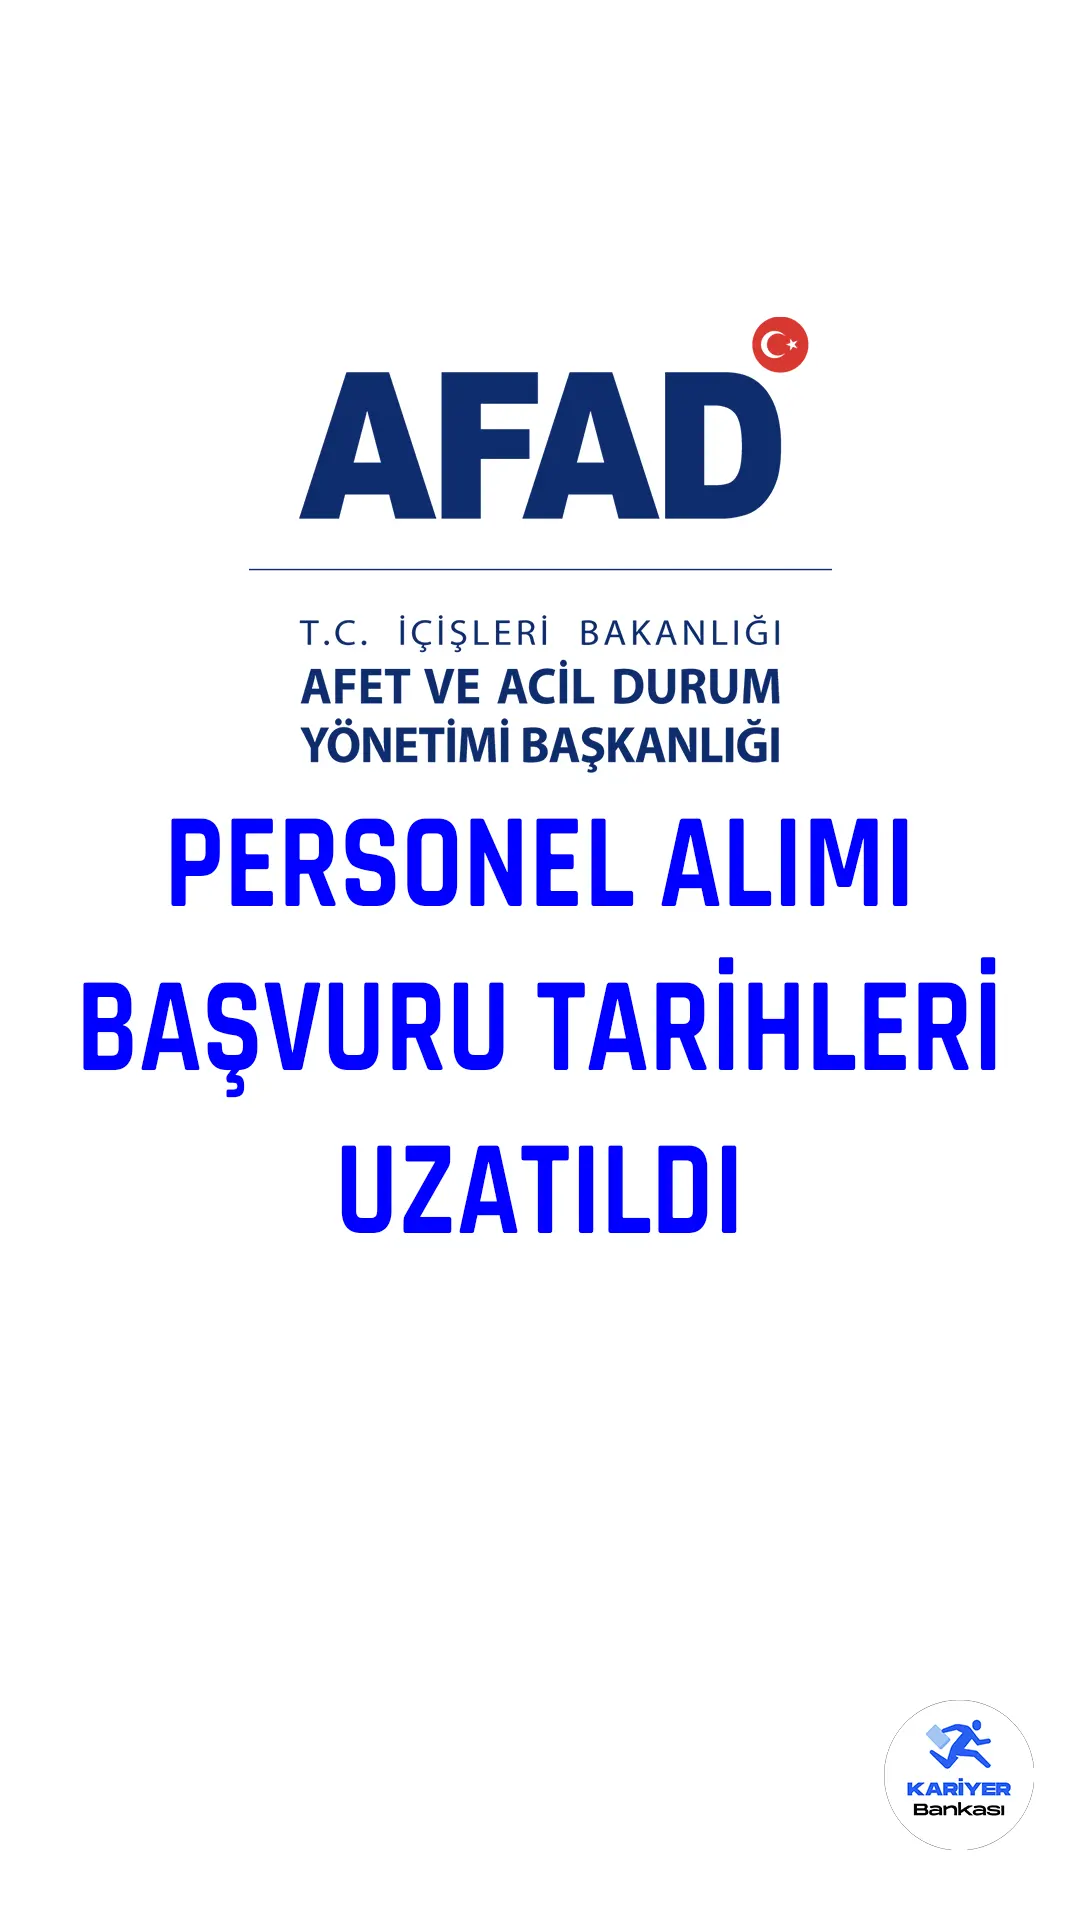 AFAD personel alımı sınav başvuruları 31 Mart'a kadar uzatıldı. İçişleri Bakanlığı Afet ve Acil Durum Yönetimi Başkanlığı 29 il afet ve acil durum uzman yardımcısı alımı başvuruları 6 Şubat 2023 tarihinde başladı. Başvuru yapacak adayların belirtilen genel ve özel şartları dikkatle incelemesi gerekmektedir.